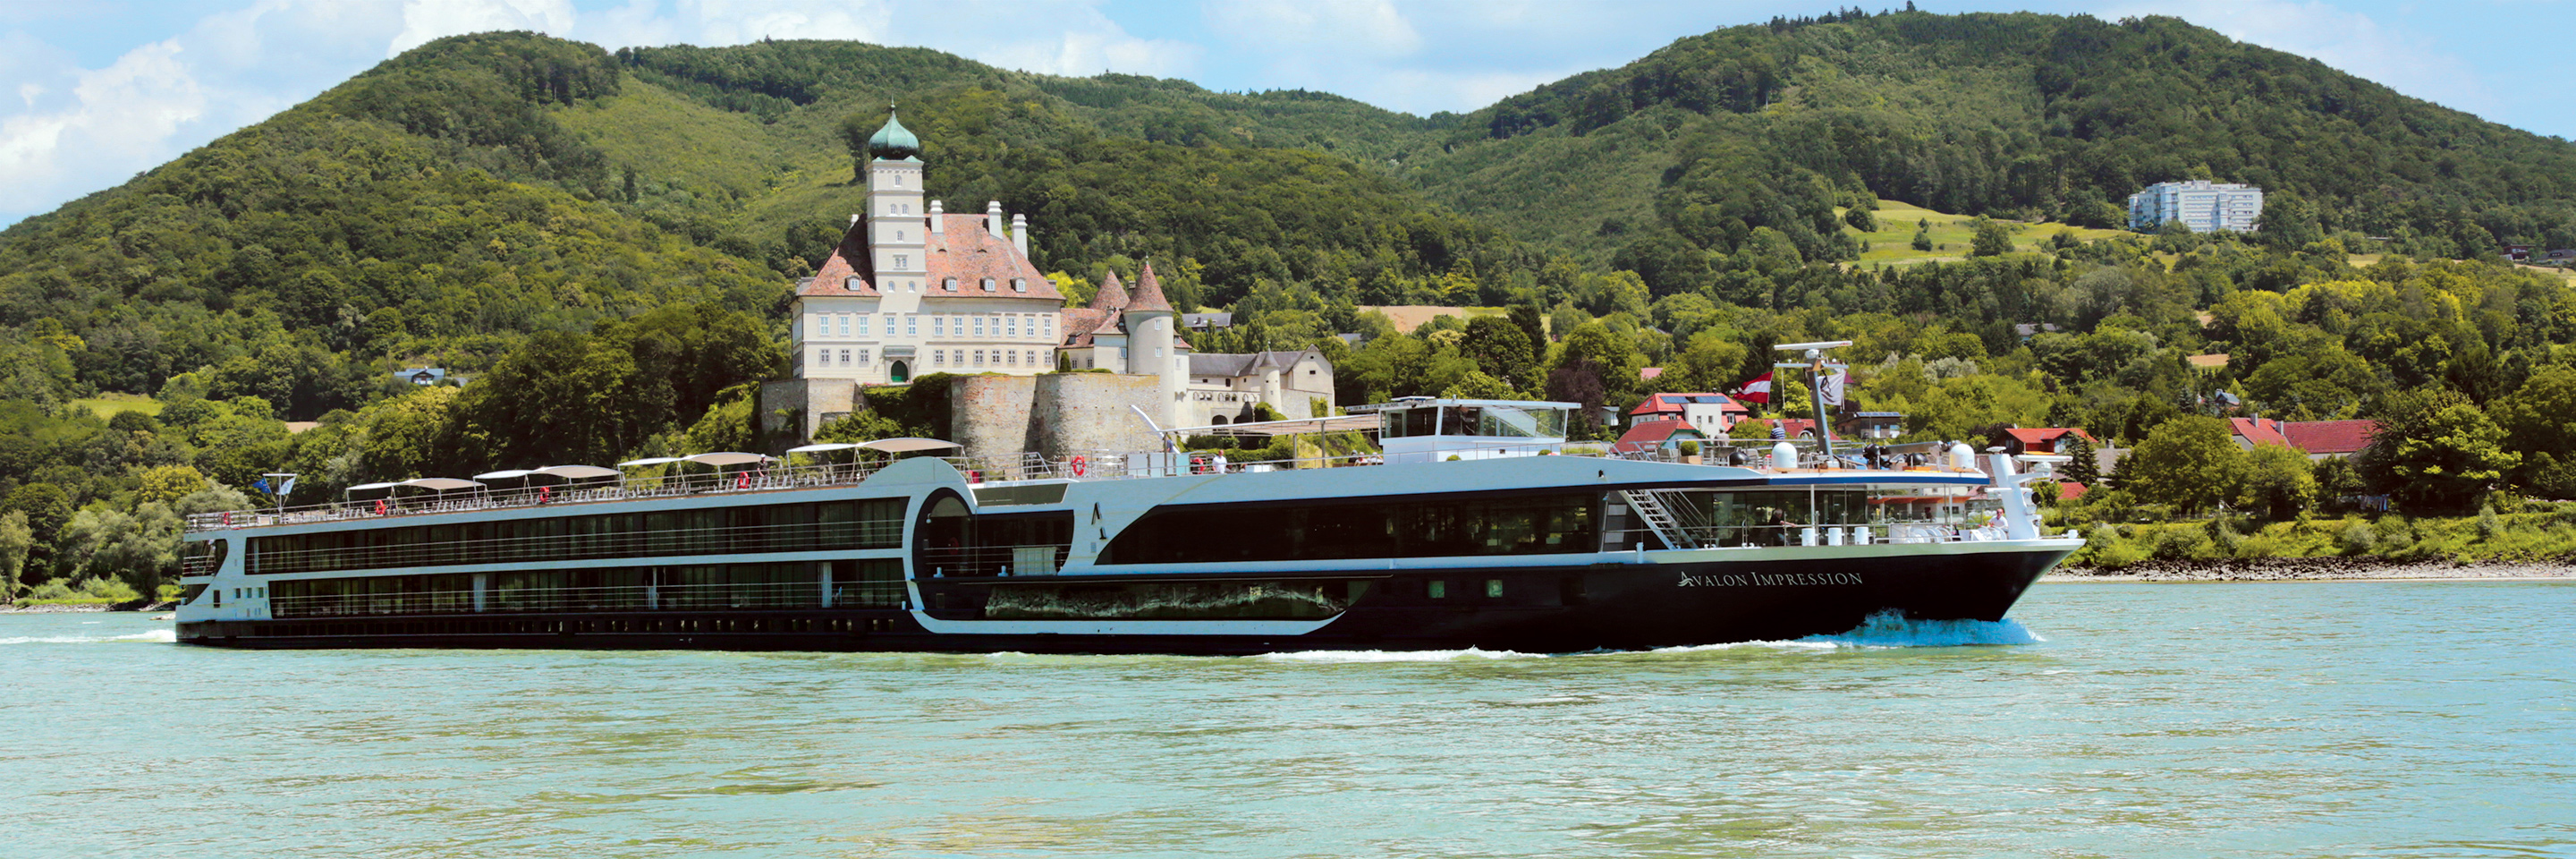 Avalon Impression - Avalon Waterways® Europe Cruise Ship